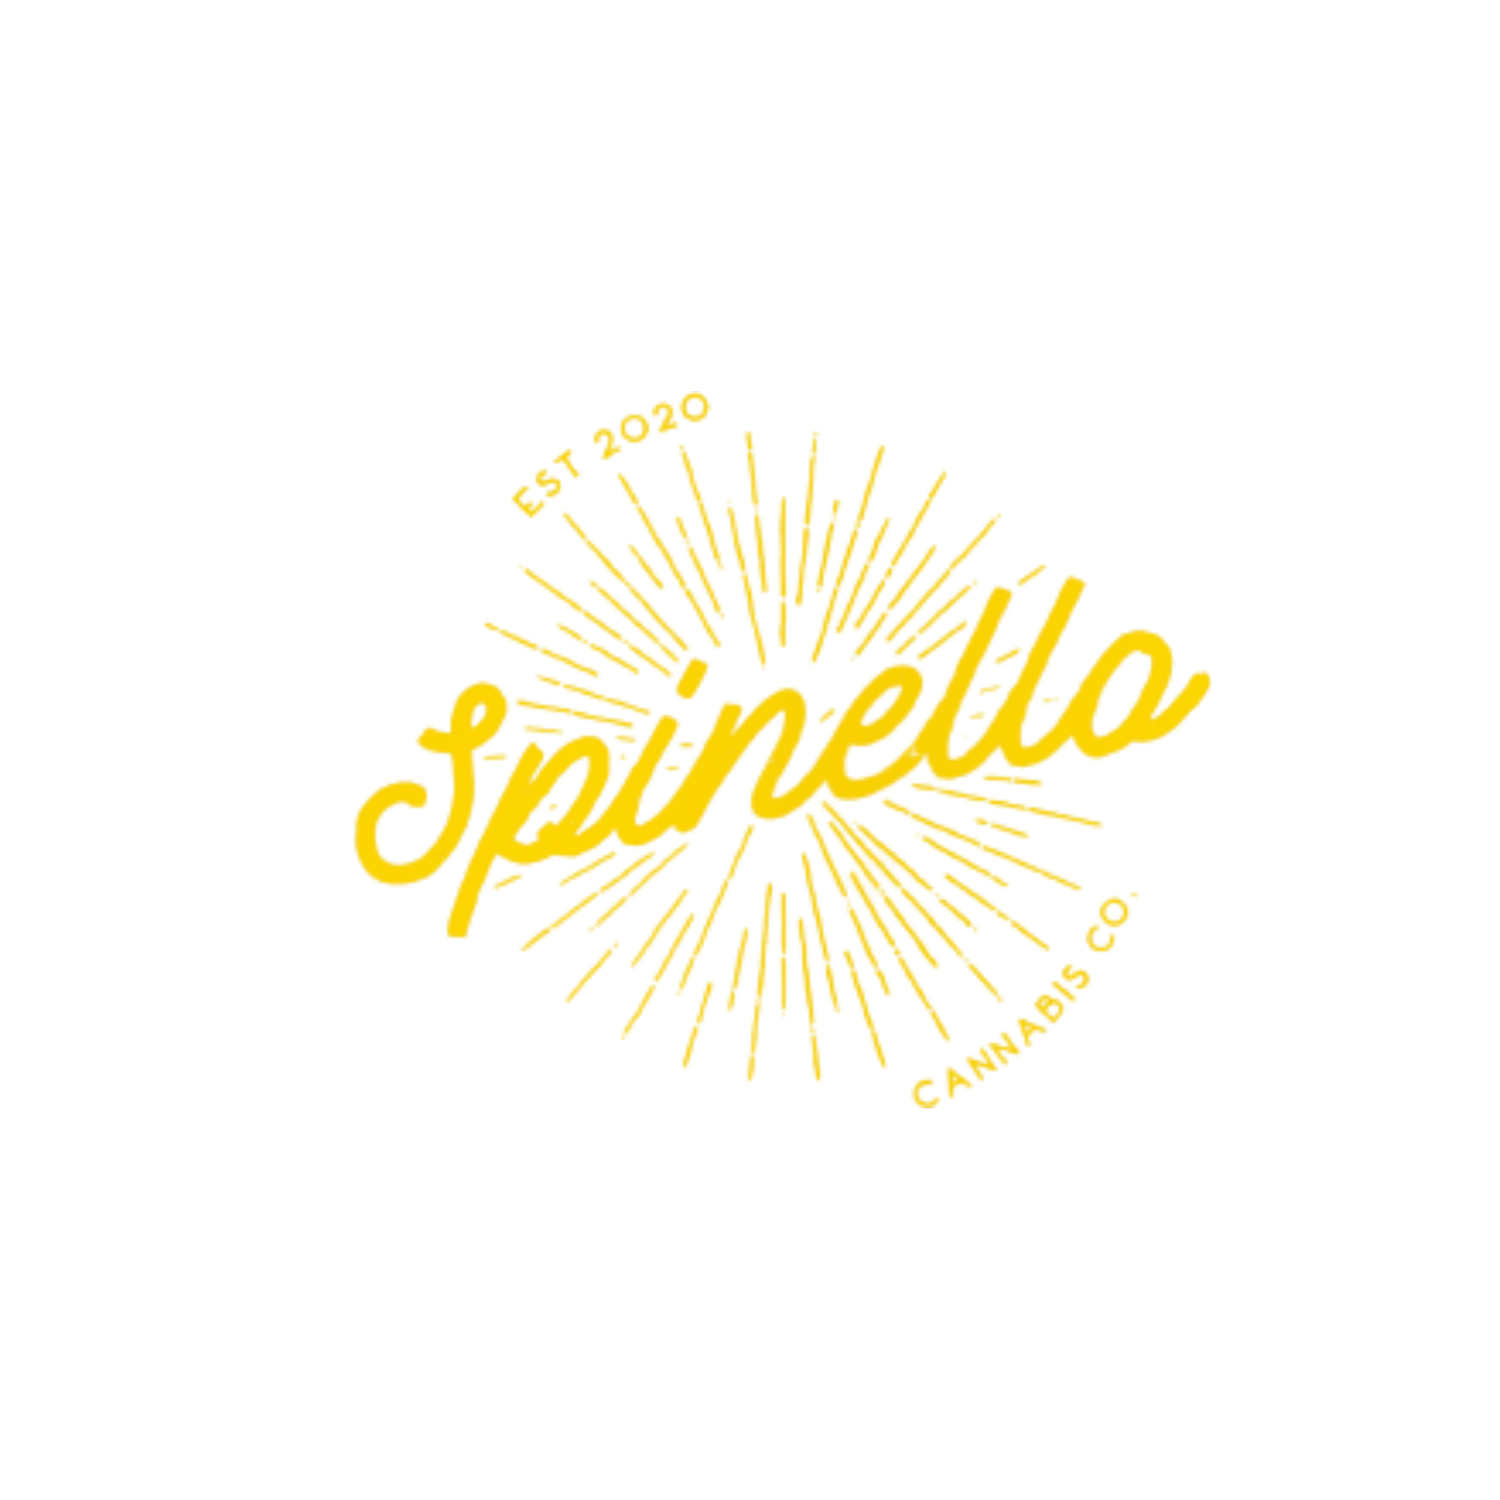 Spinello Cannabis Co. Cannabis Brand Logo